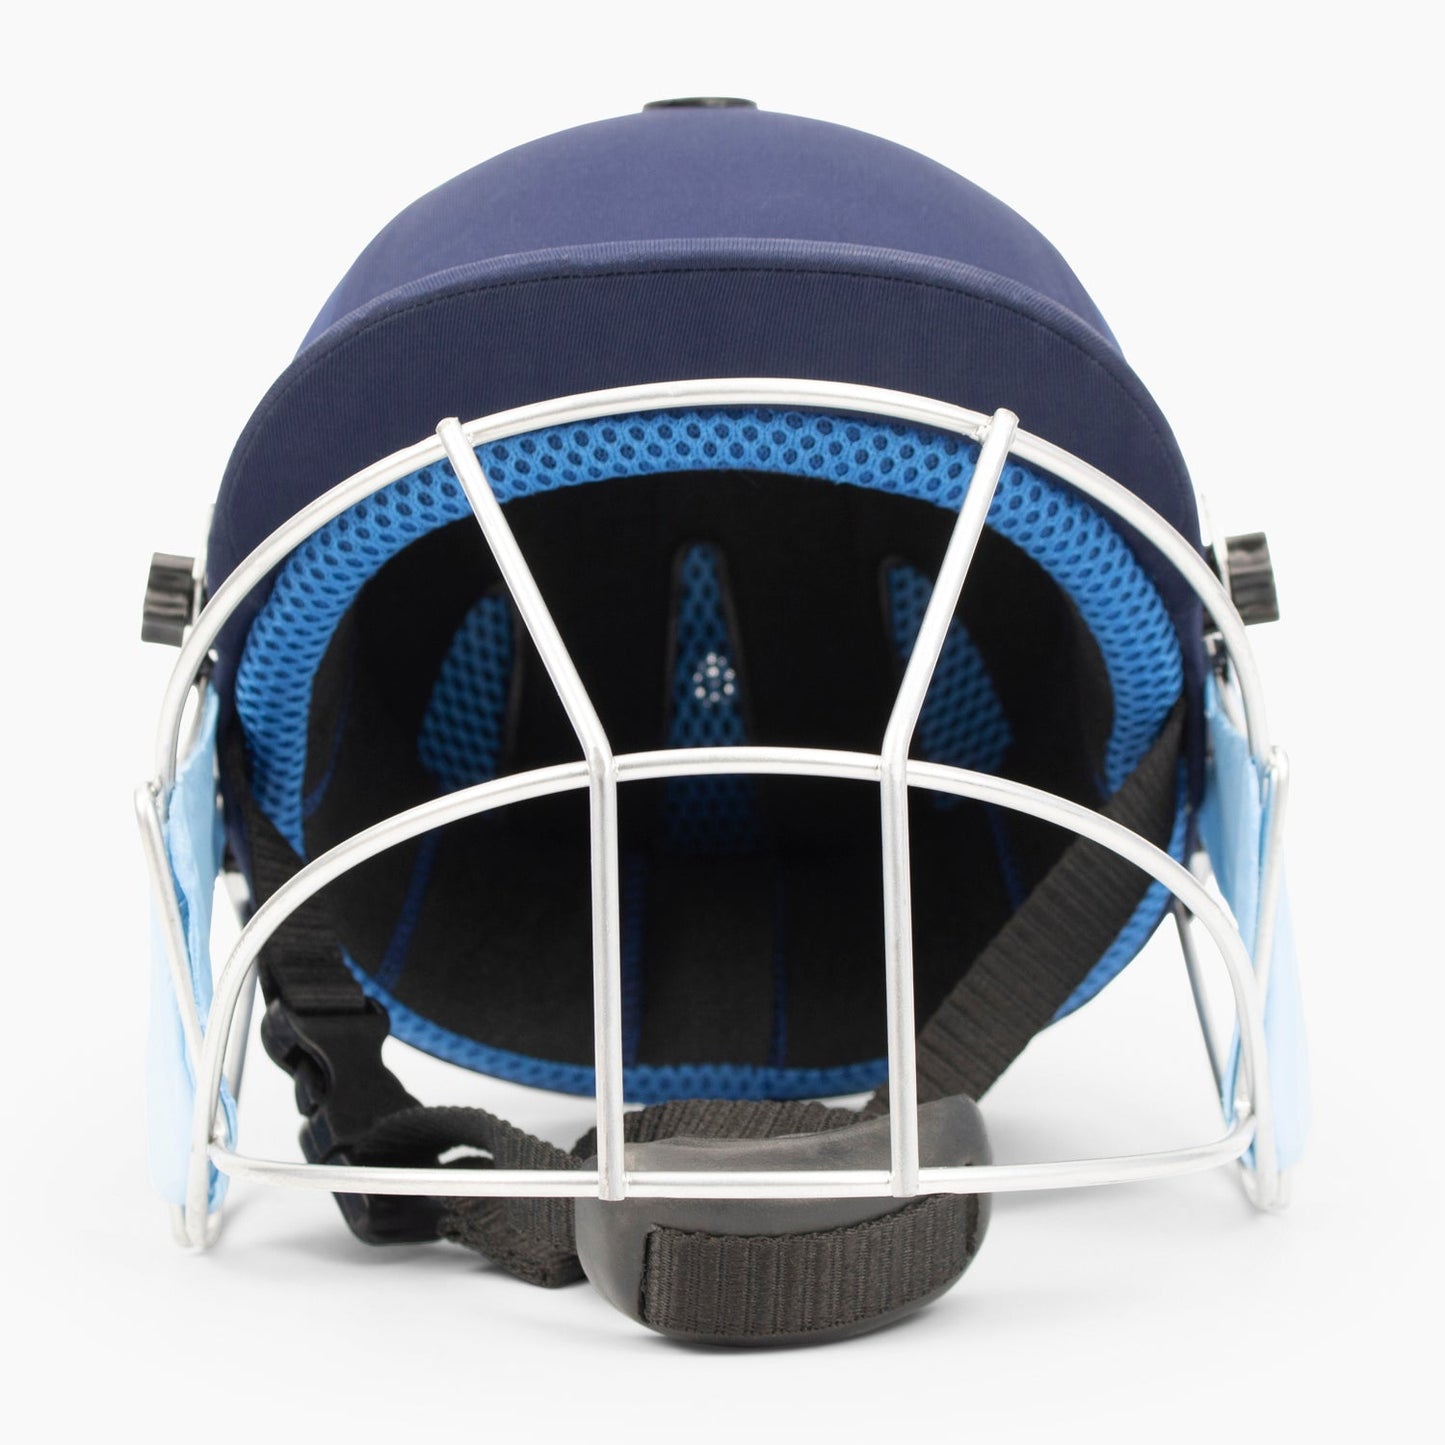 Buy Heritage Academy Cricket Helmet-Cricket Helmet-Heritage-Splay UK Online